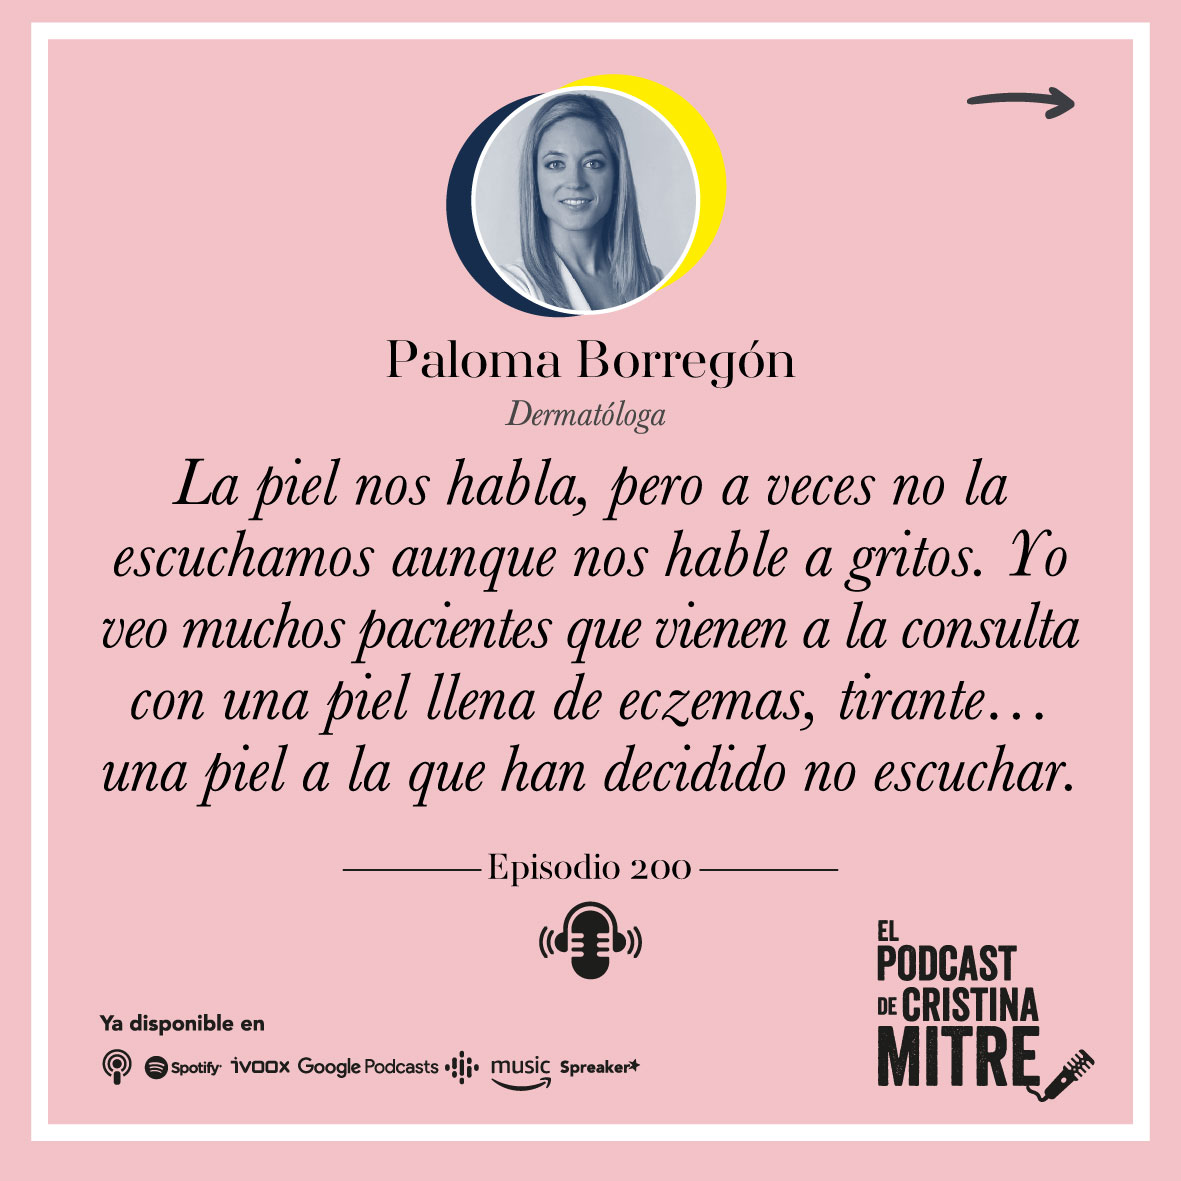 Podcast Cristina Mitre Paloma Borregon cuidado de la piel 